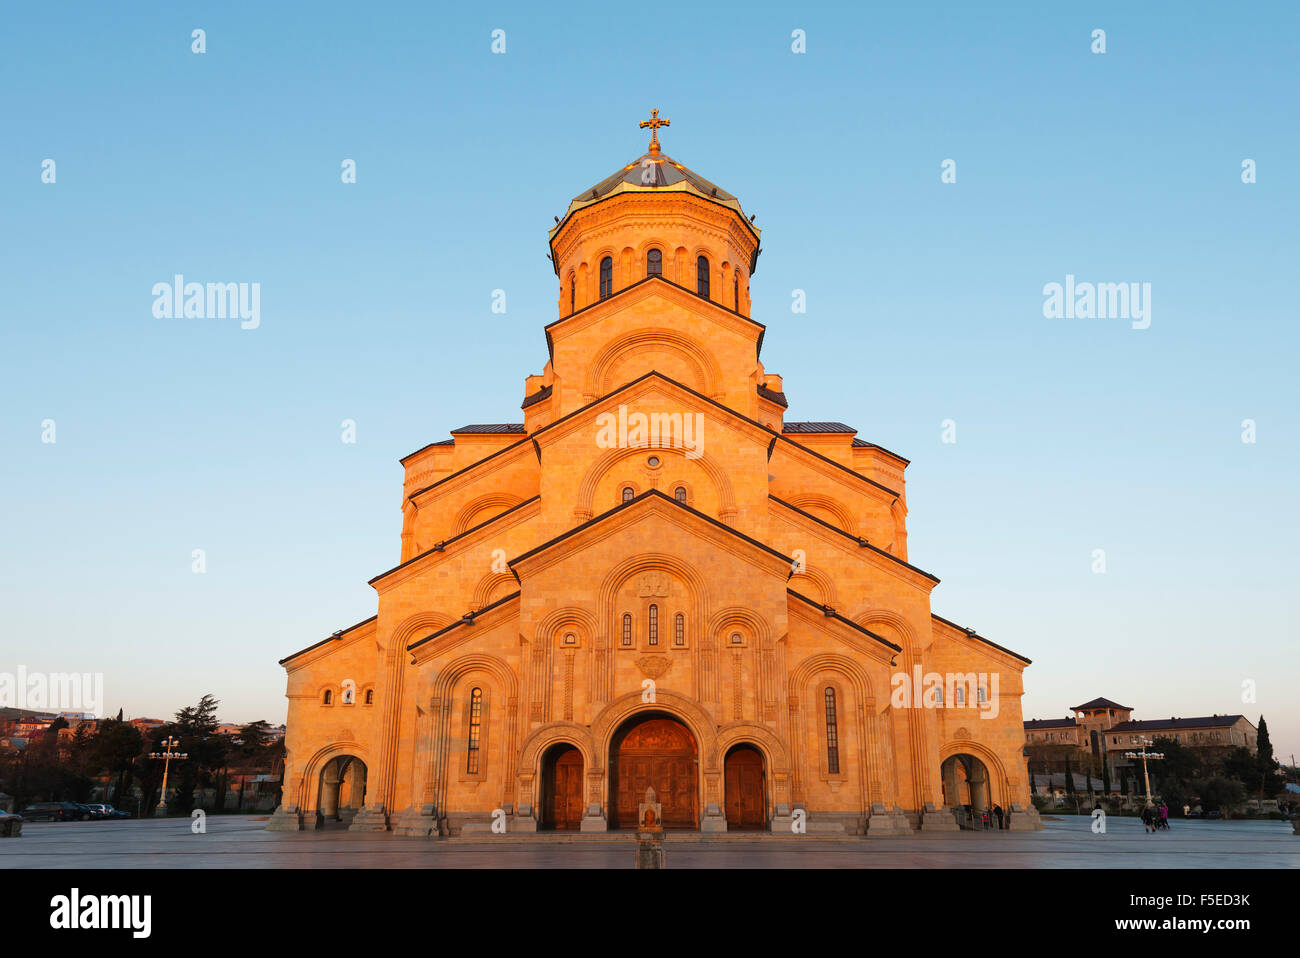 La Cathédrale de Tbilissi Sameda (sainte trinité) plus grande cathédrale orthodoxe dans le Caucase, Tbilissi, Géorgie, Asie centrale, Asie Banque D'Images